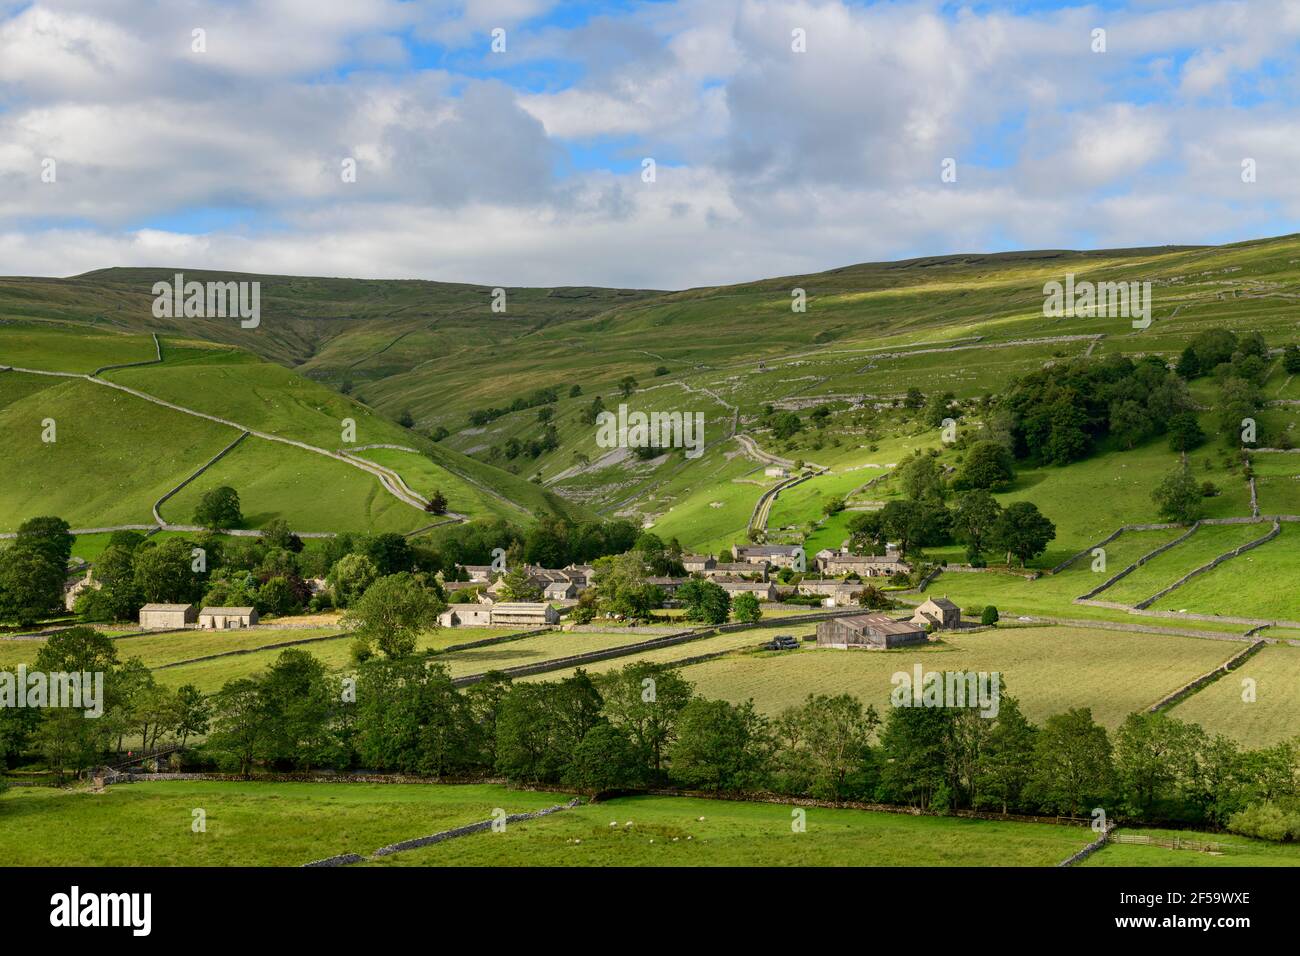 Pintoresco pueblo de Dales (casas de piedra) situado en el valle iluminado por el sol por campos, colinas, laderas y garganta empinada - Starbotton, Yorkshire Inglaterra Reino Unido. Foto de stock